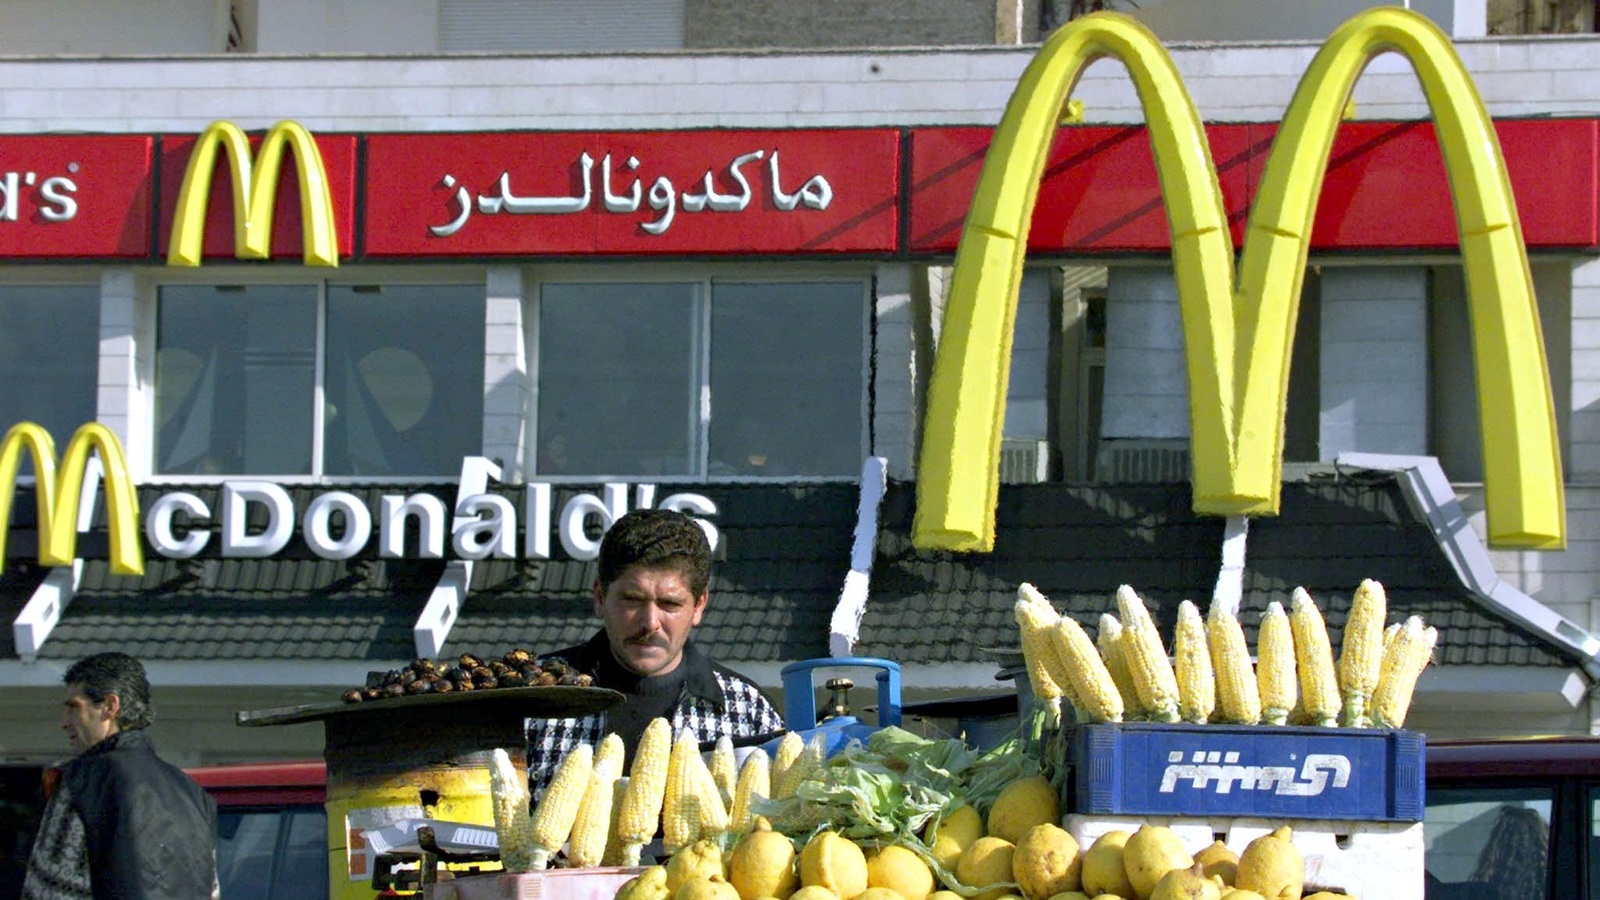 "الفرانشايز": لبنانية لا علاقة لإسرئيل بها.. ومقاطعتها ضرر اقتصادي